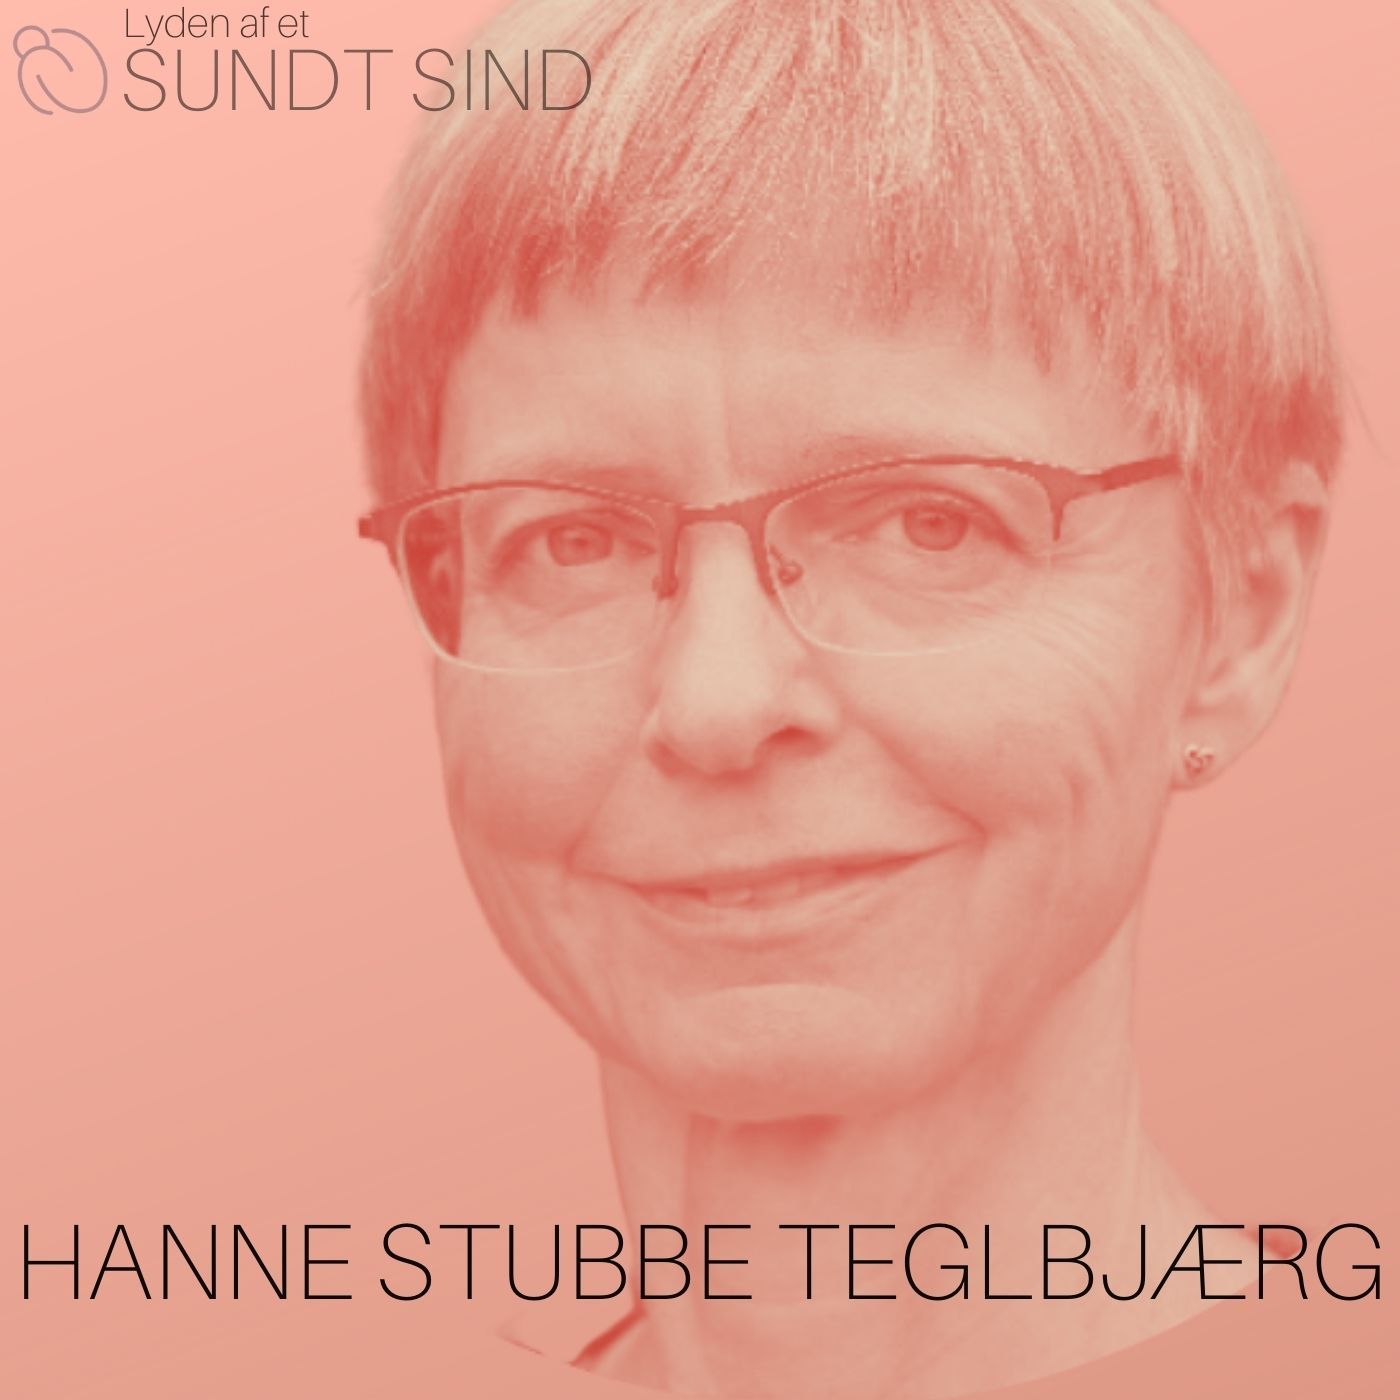 17. Den skabende kunstterapi /m. Hanne Stubbe Teglbjærg, psykiater